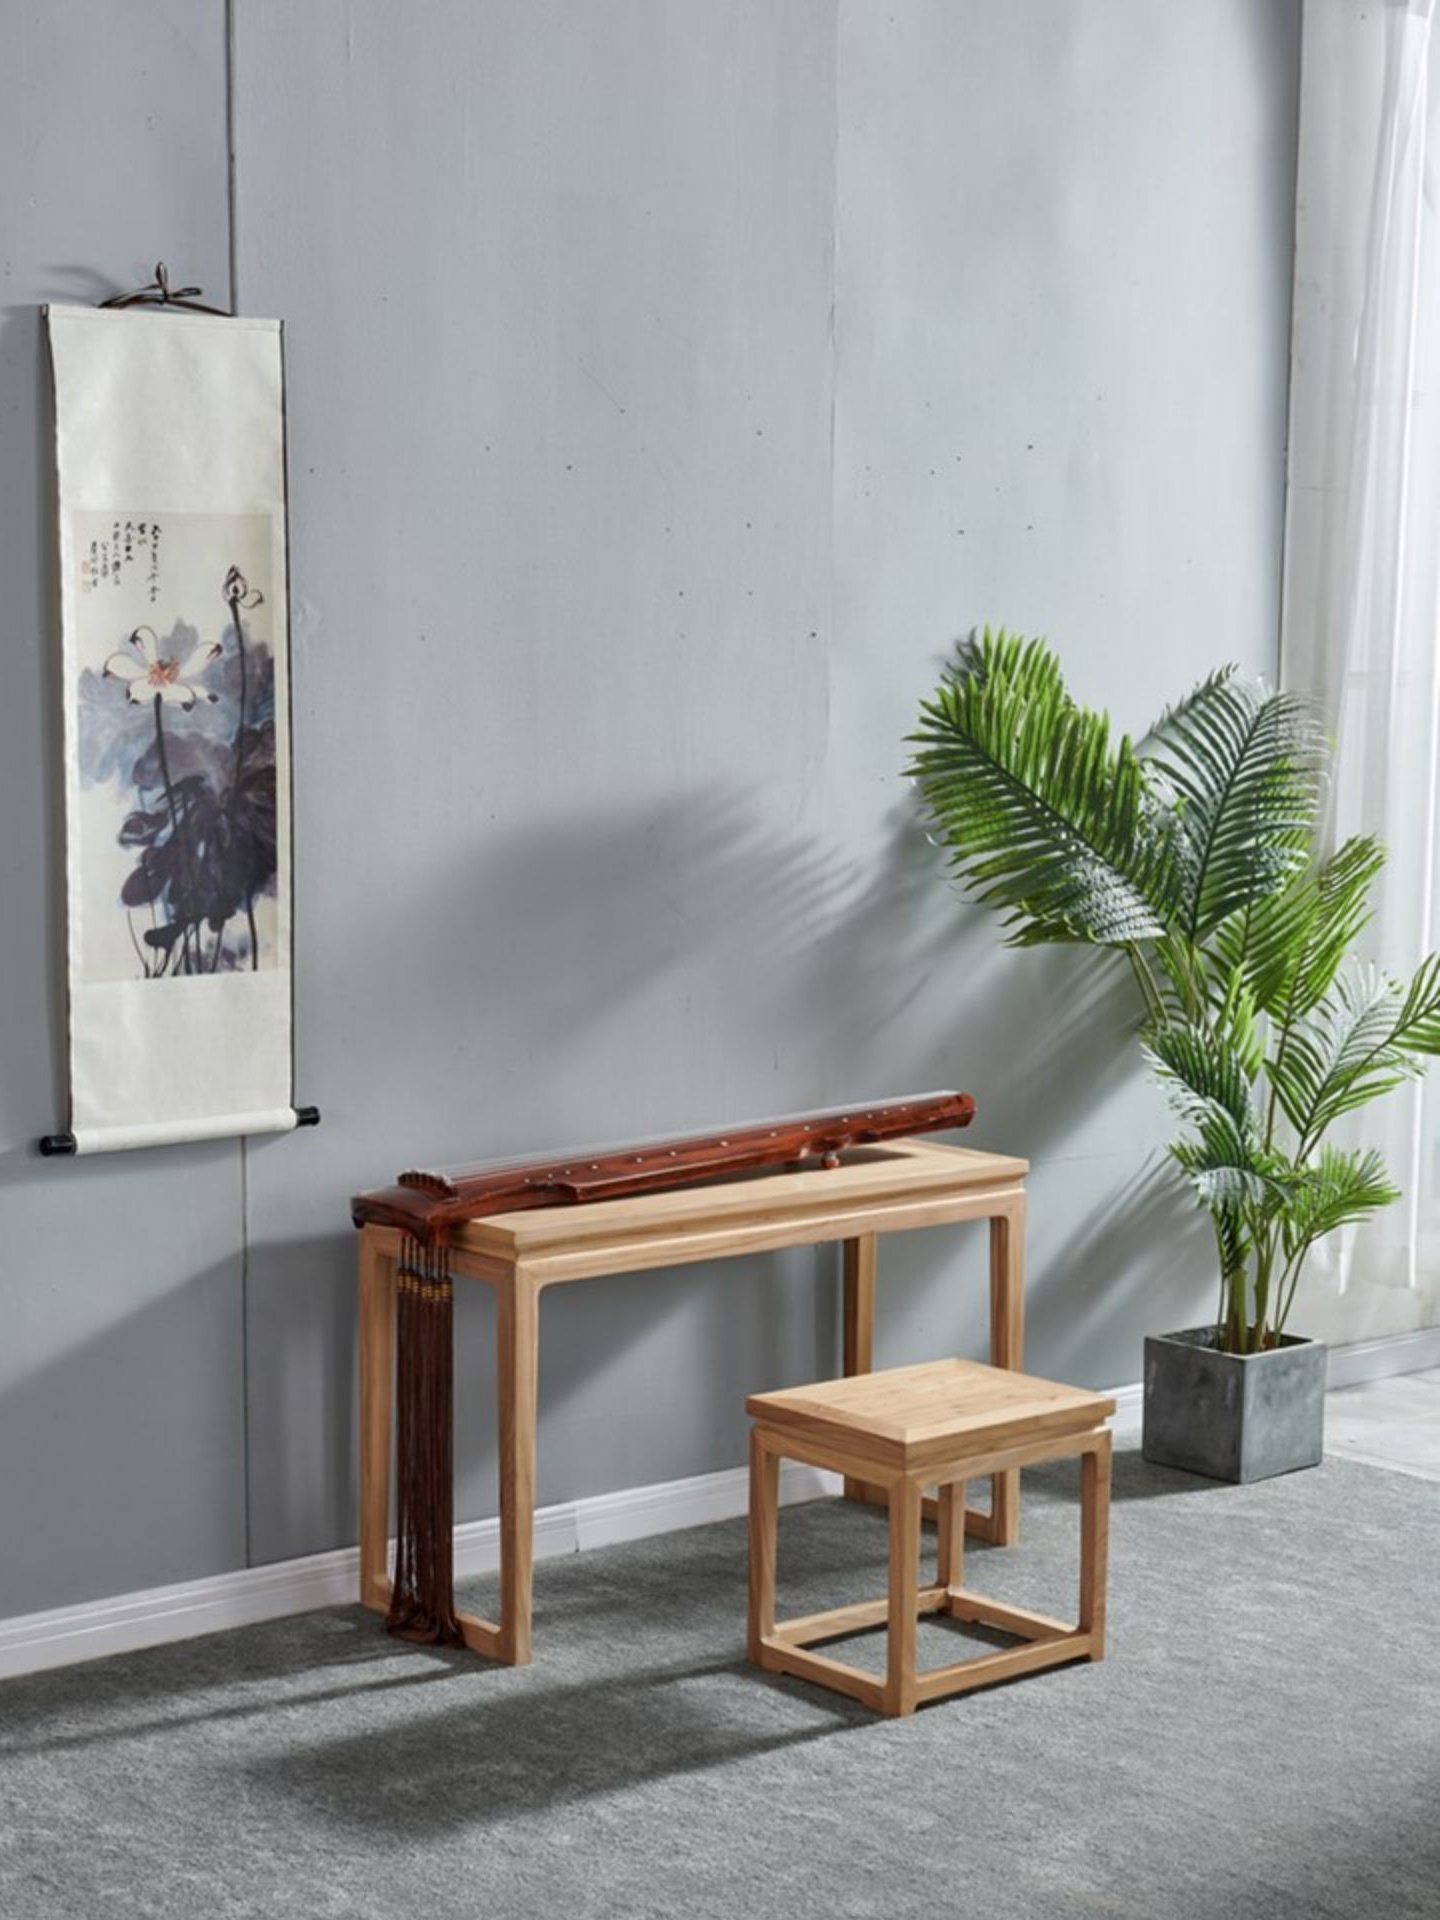 老榆木打造古琴桌椅套組簡約新中式風格禪意原木傢俱 (2折)